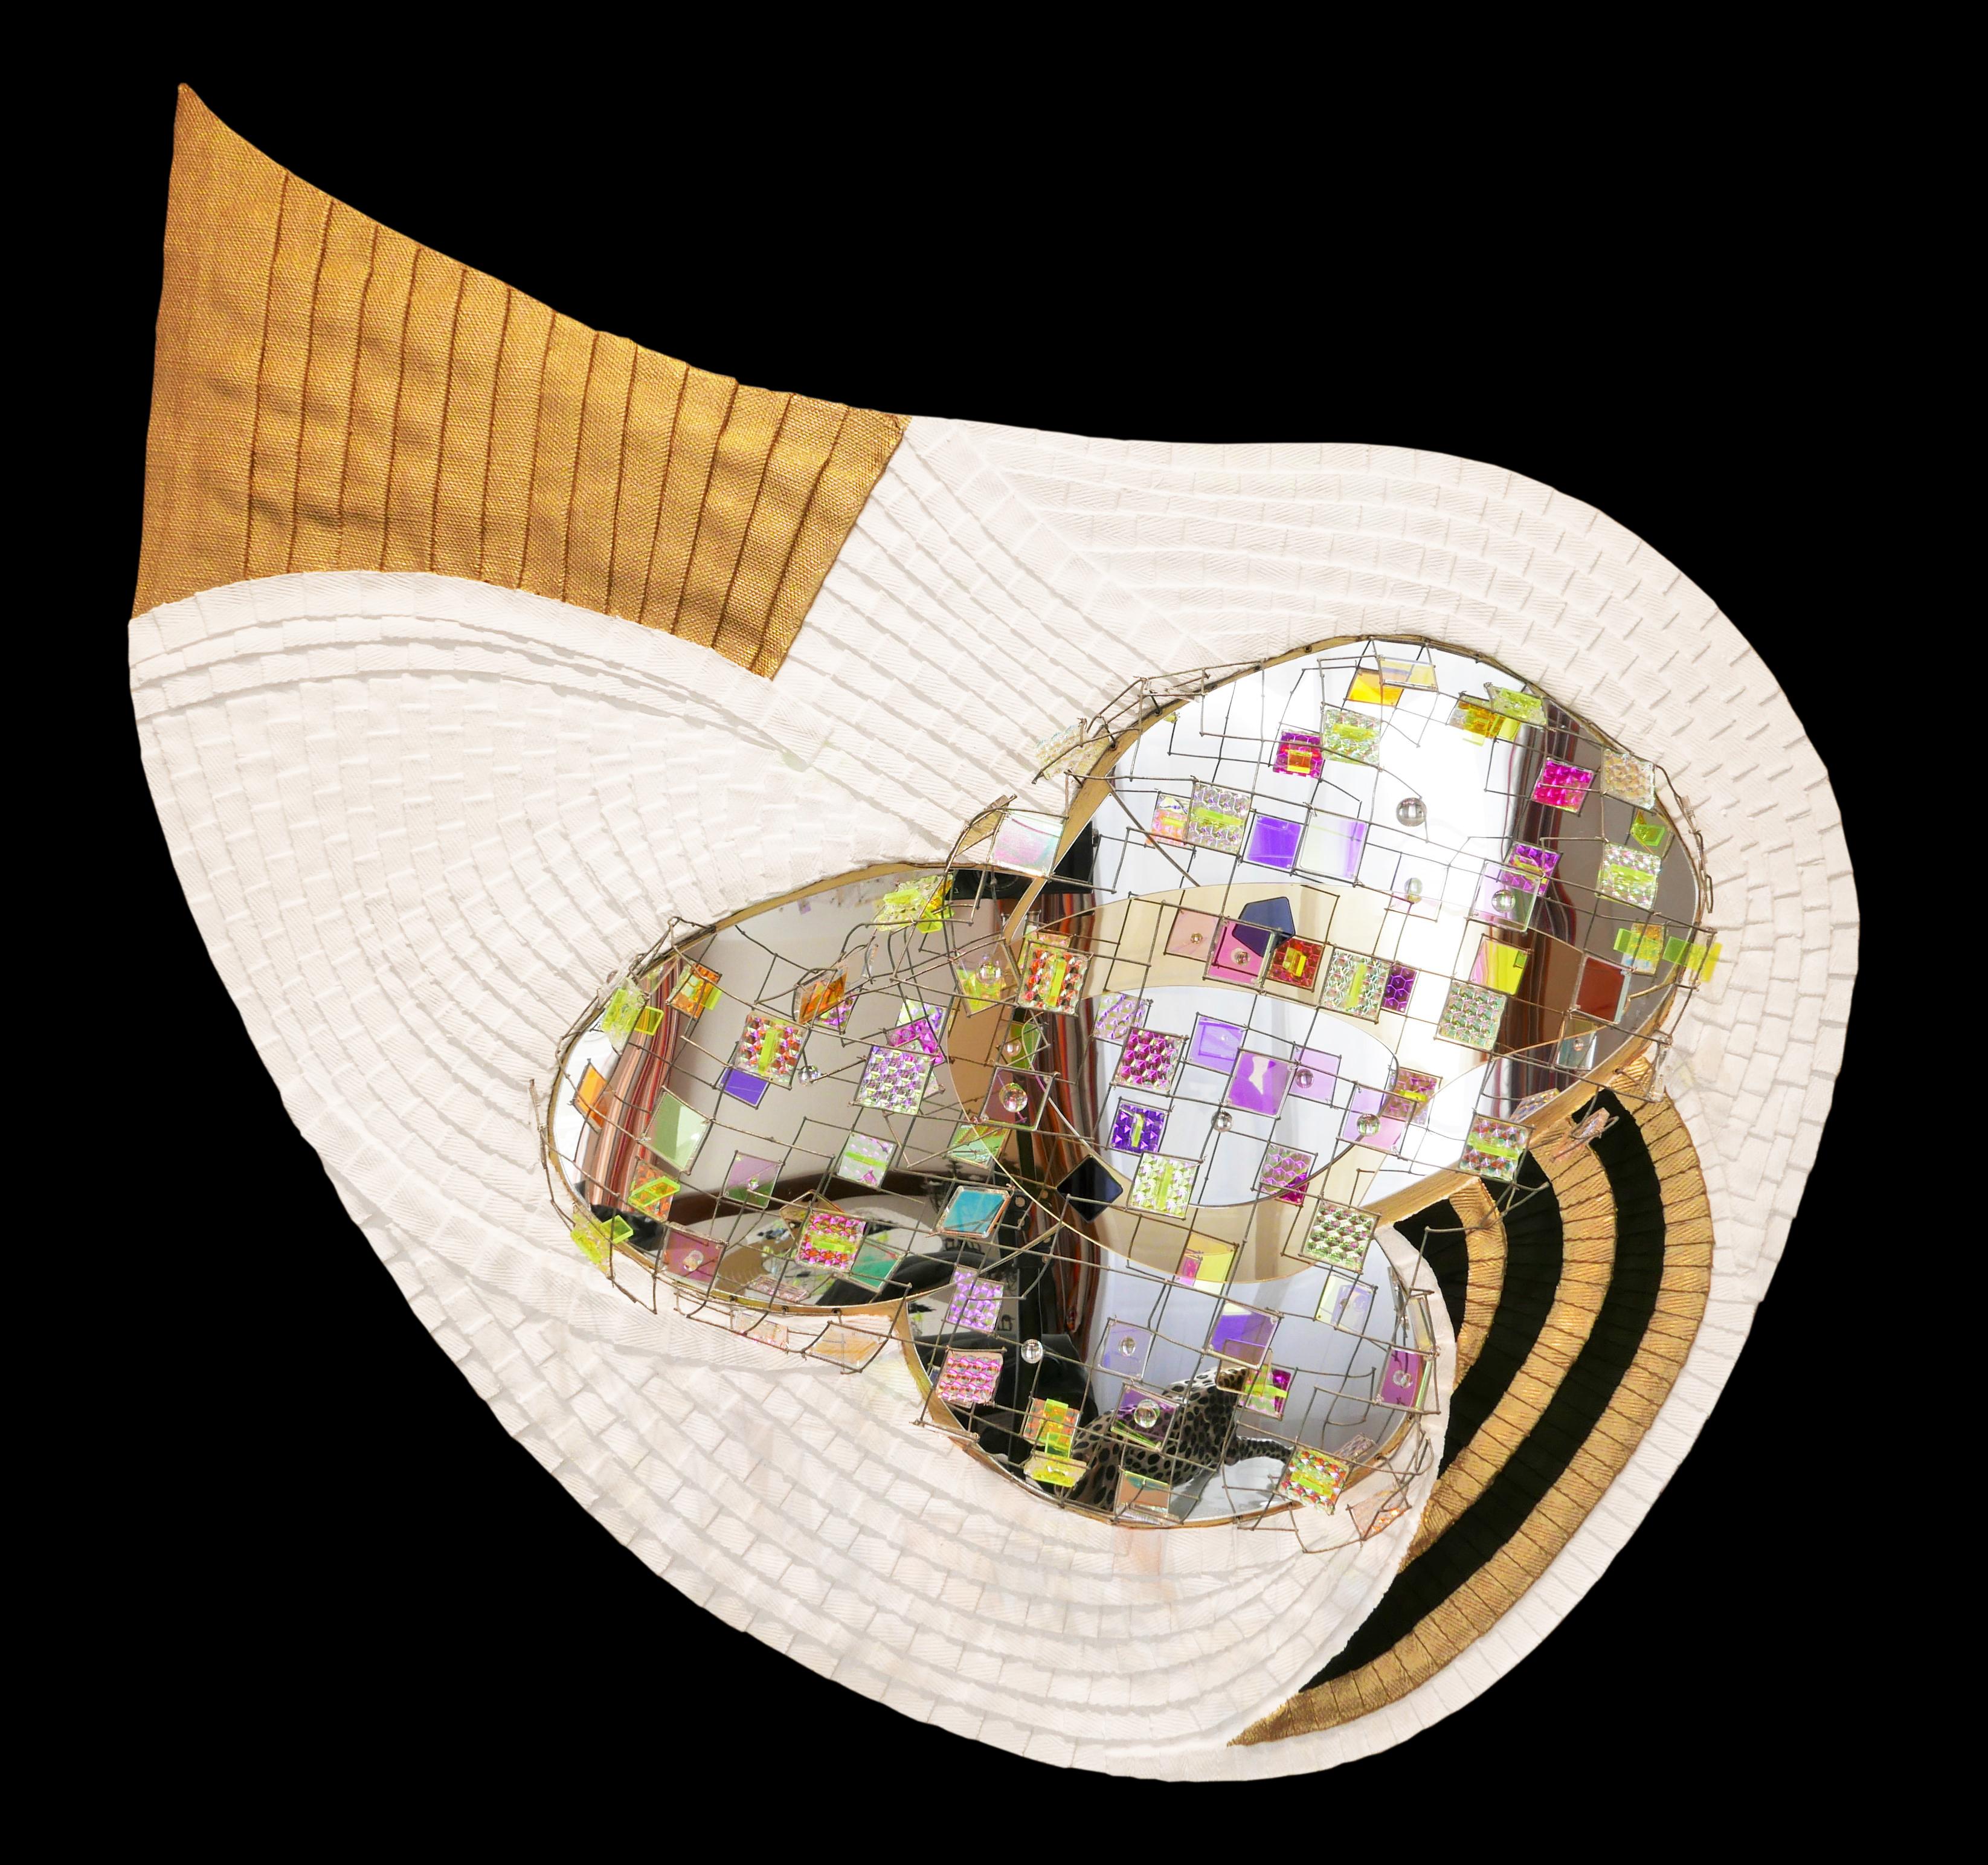 Lin, sangle de lin, verre acrylique (miroir, irisé), gesso, cire dorée, fil de fer et peinture acrylique sur panneau

Eric Beauplace est un artiste plasticien contemporain français né en 1962 qui vit et travaille à Saint Germain-en-Laye, France. Le